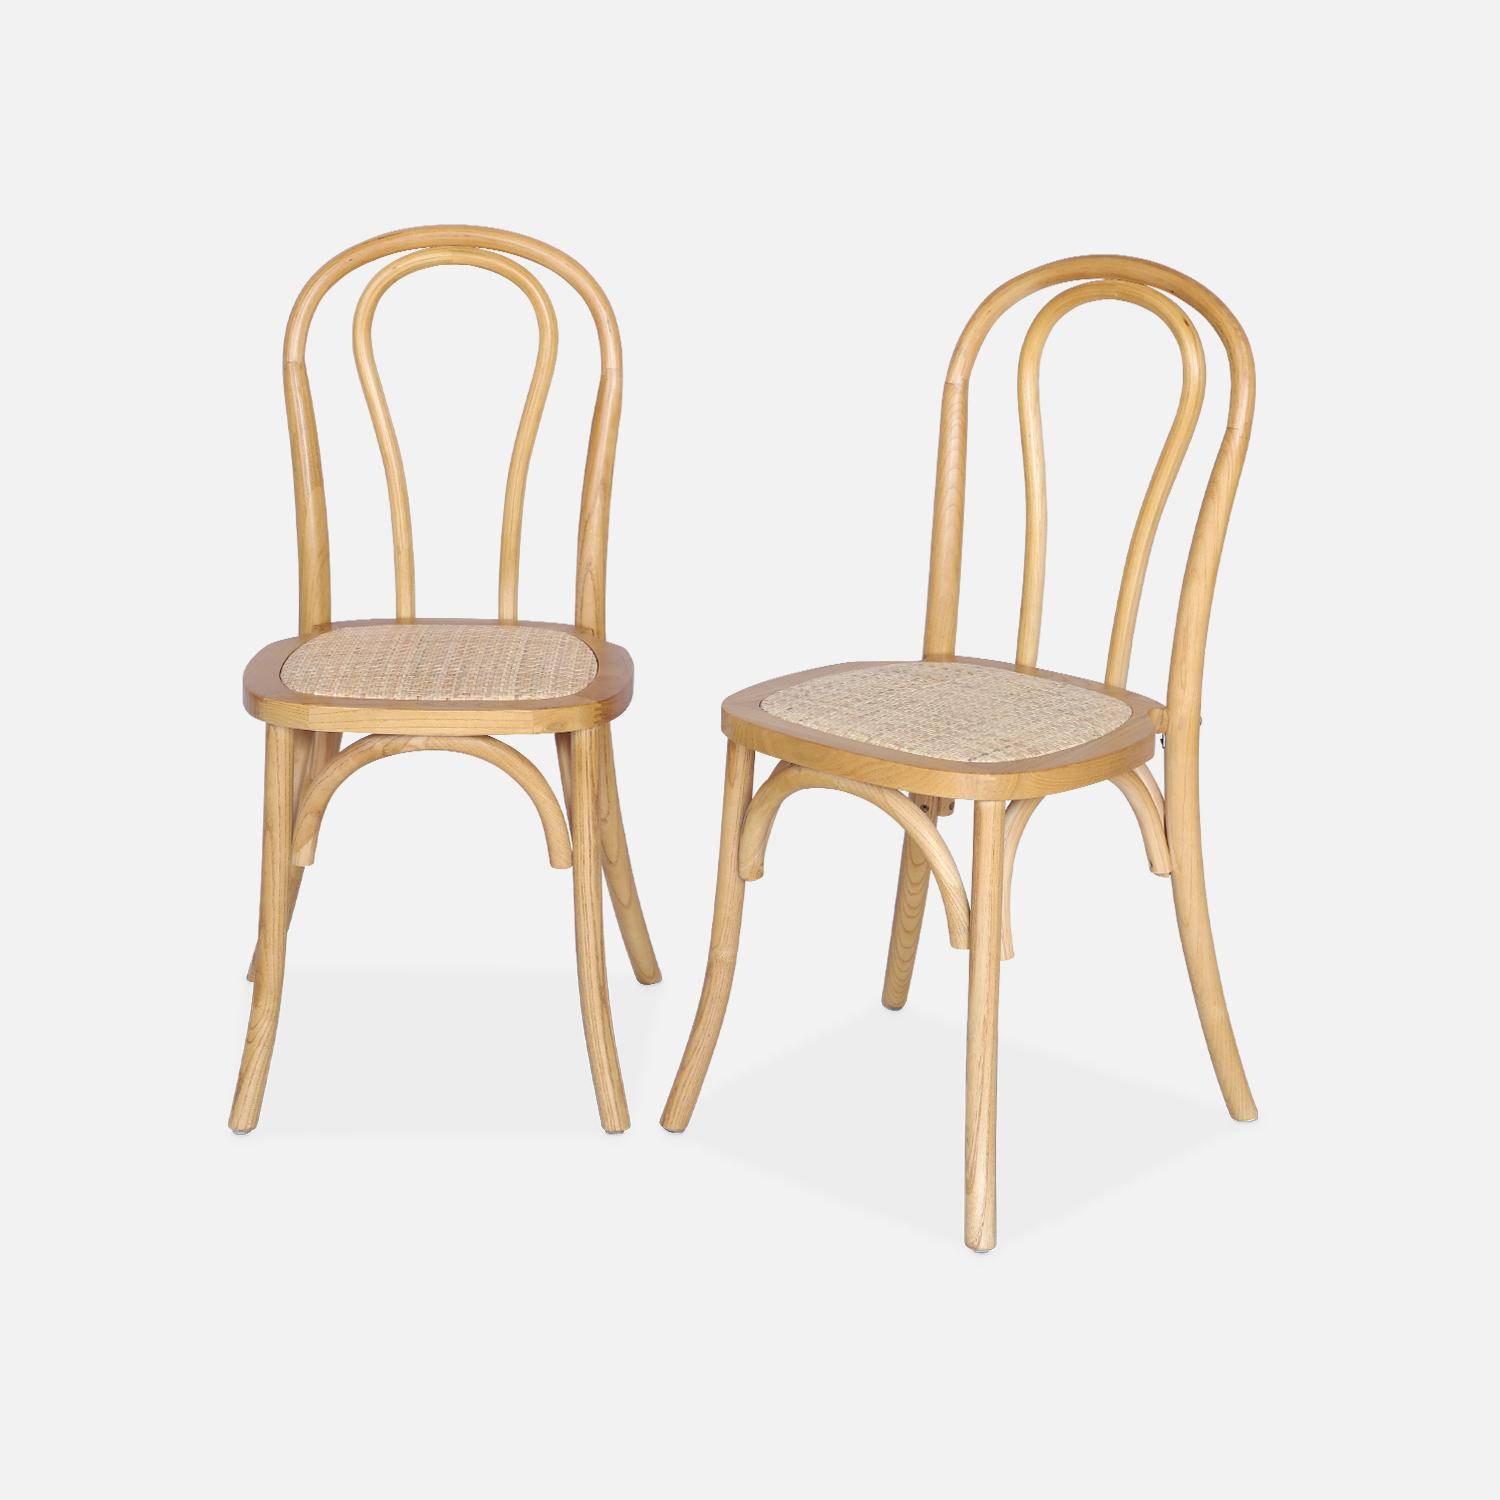 Juego de dos sillas vintage de madera con asiento de ratán y respaldo redondeado en color natural Photo1